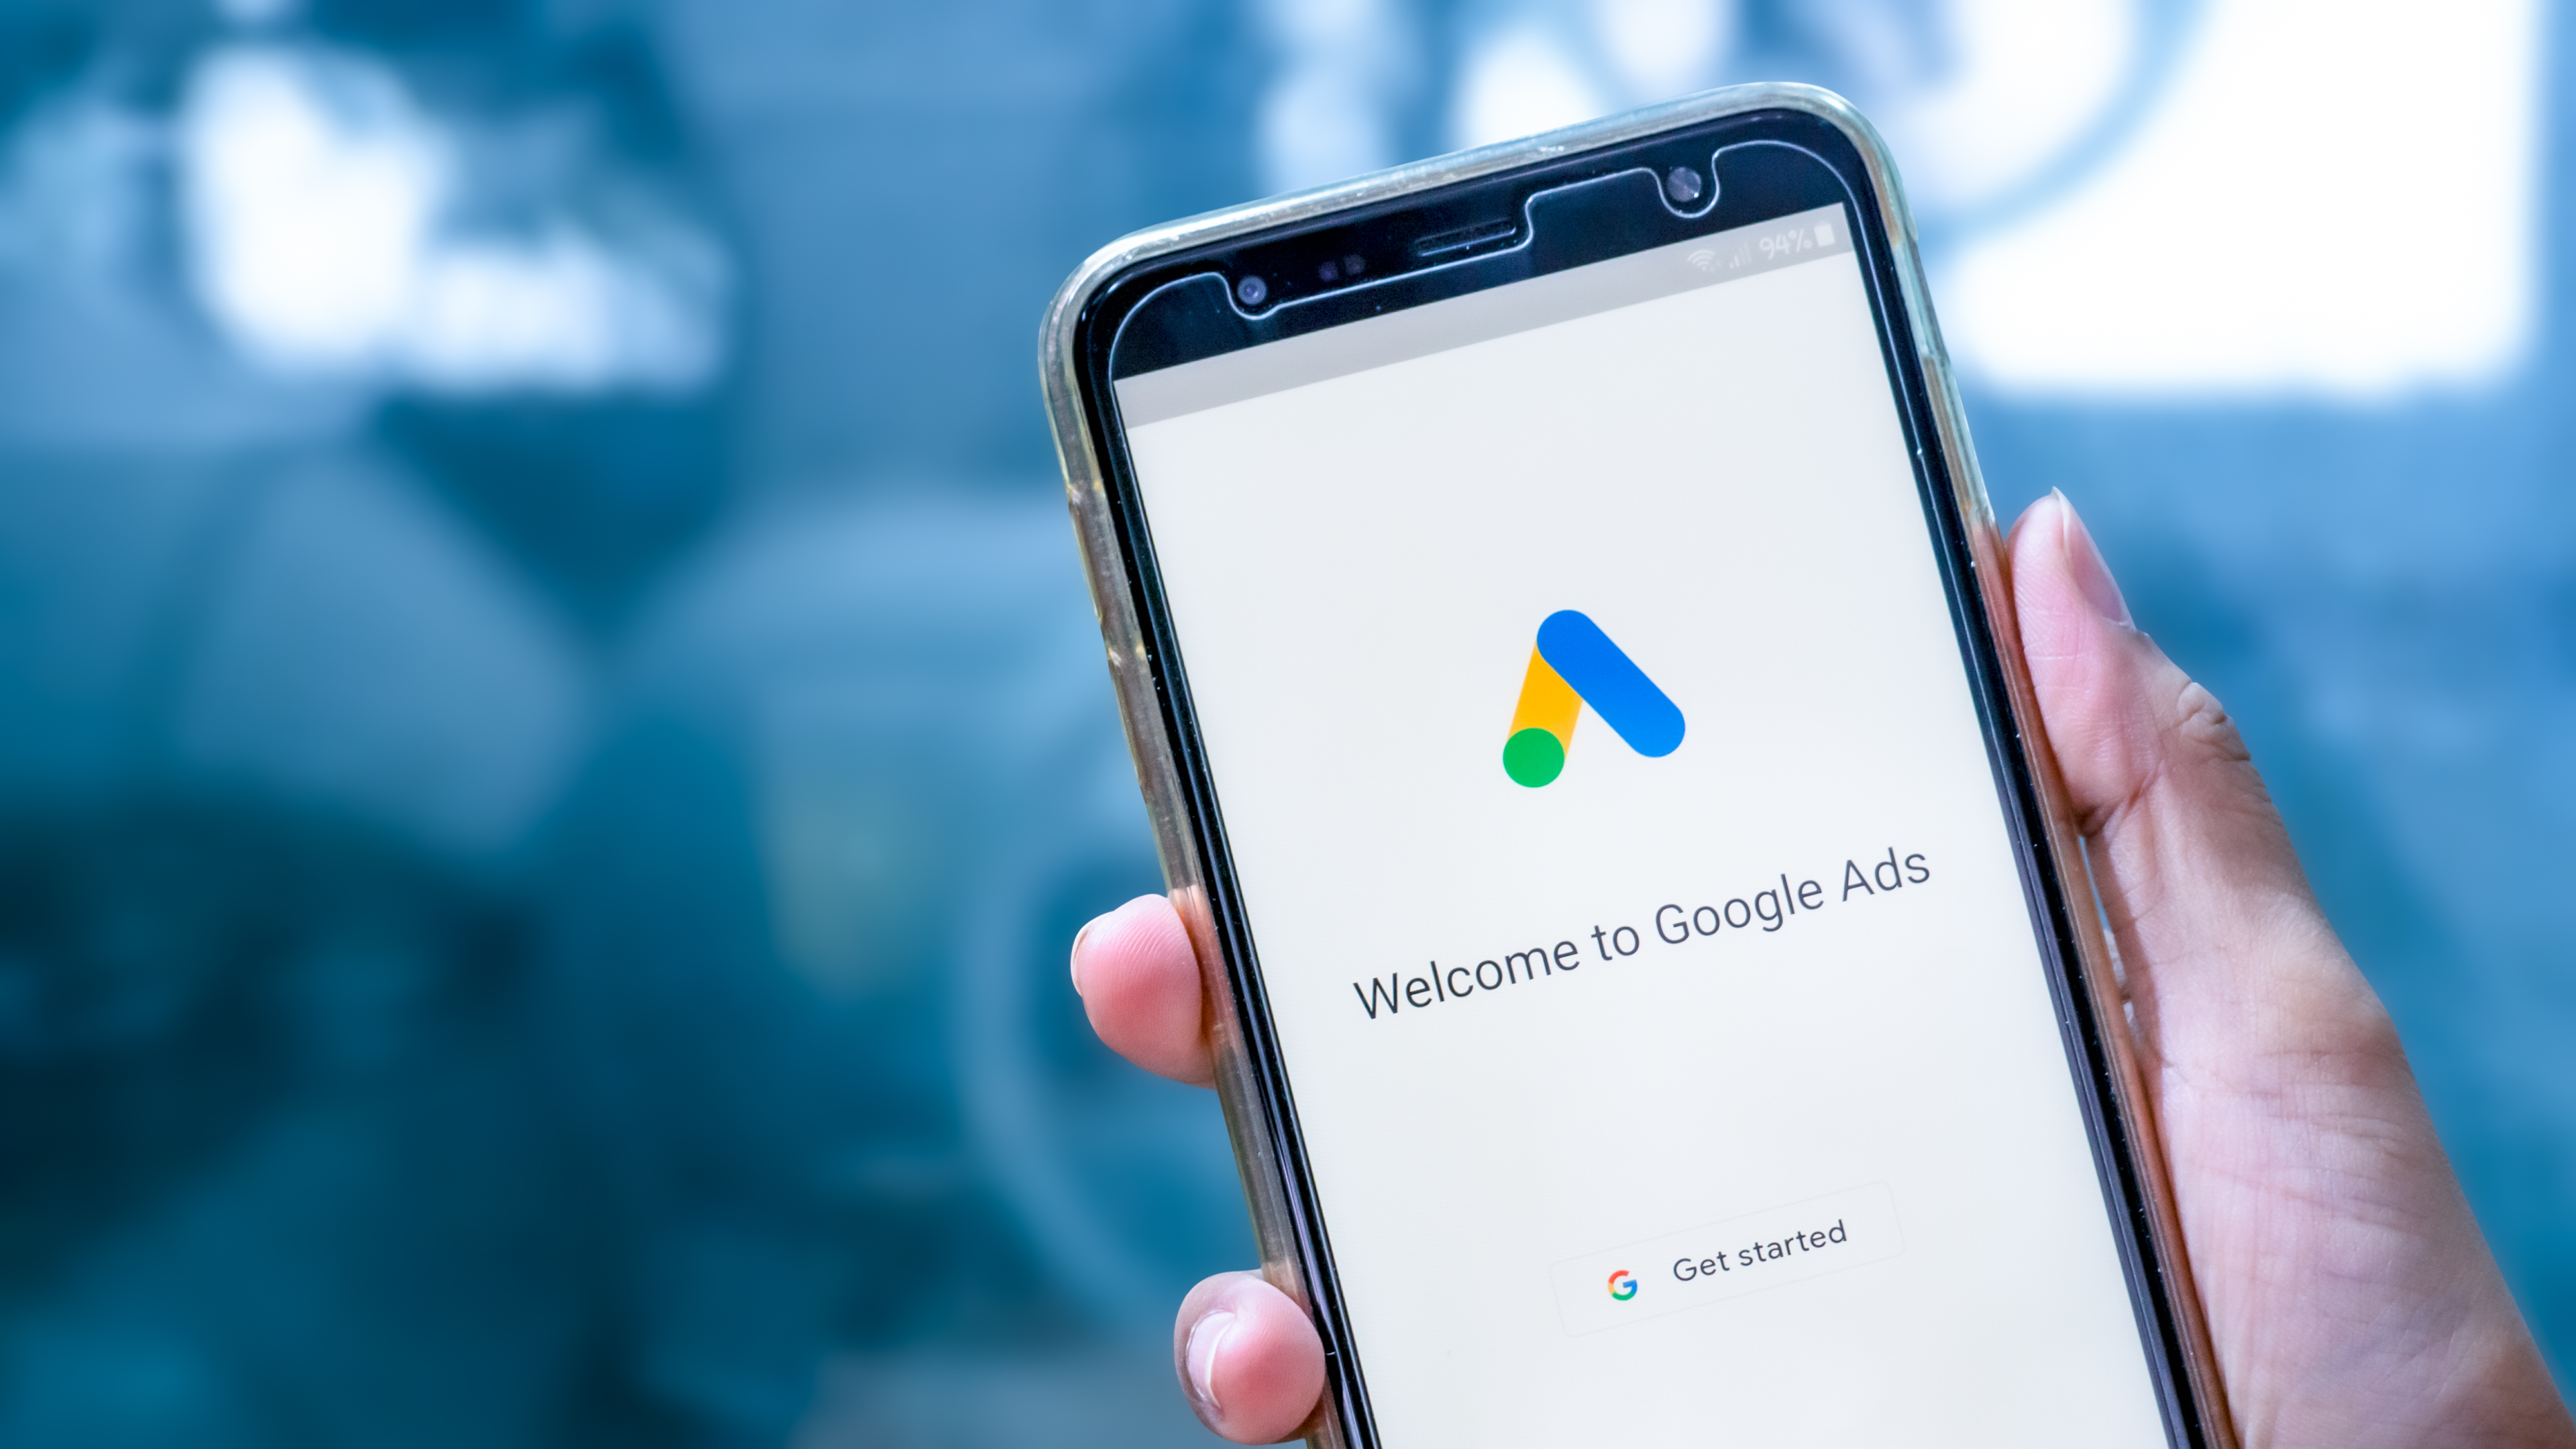 Google Ads on mobile